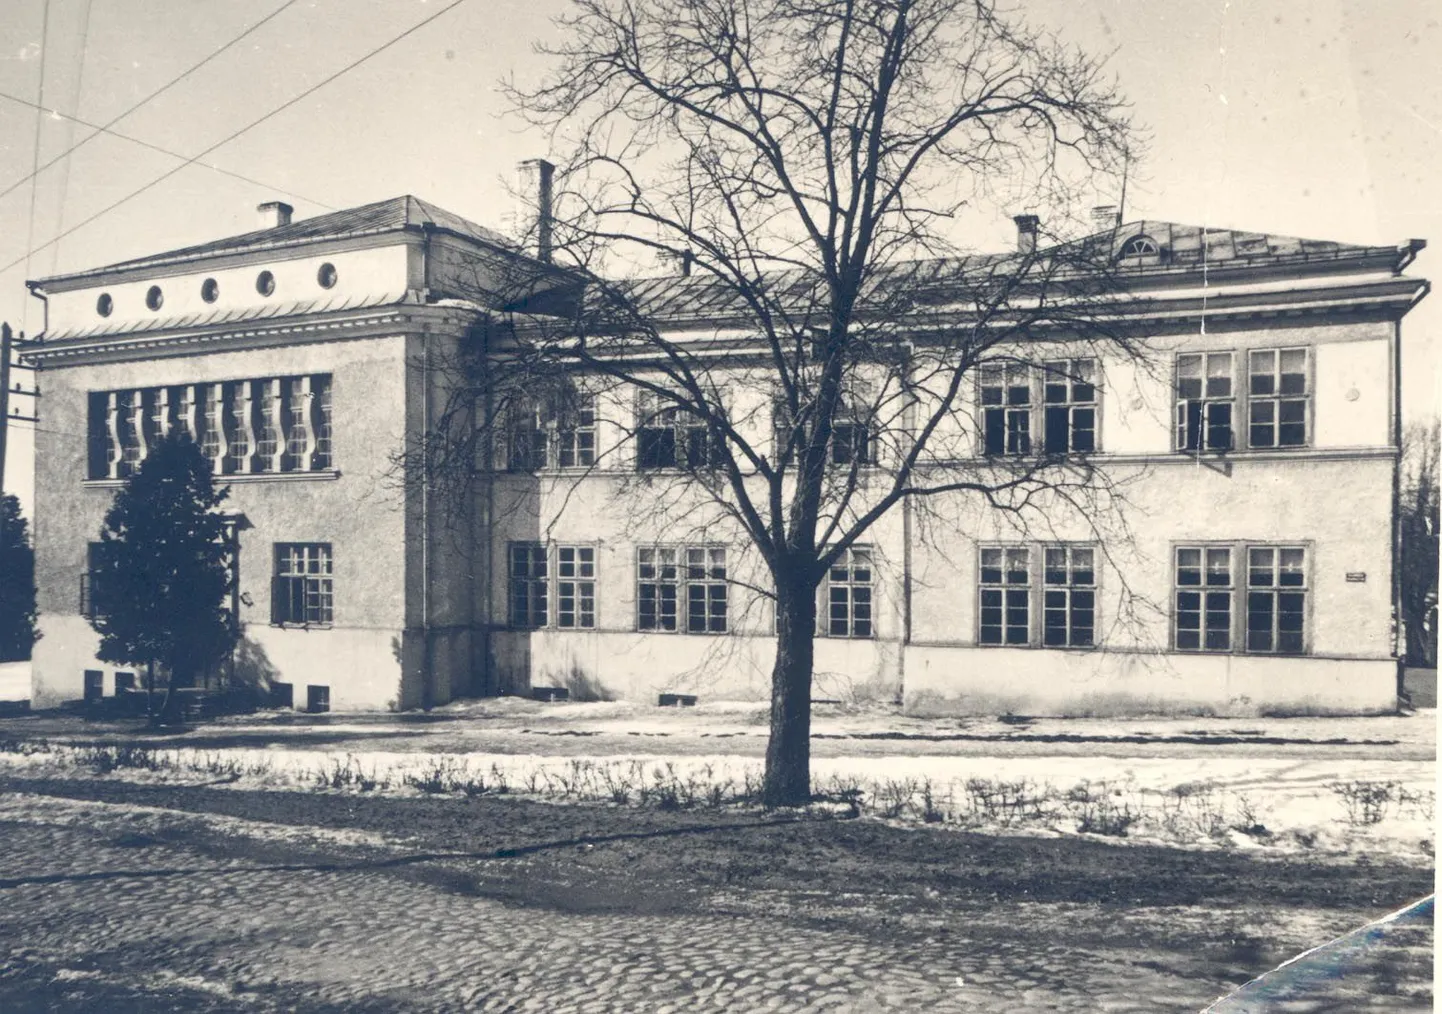 Valuoja põhikooli hoone 1928. aastal.